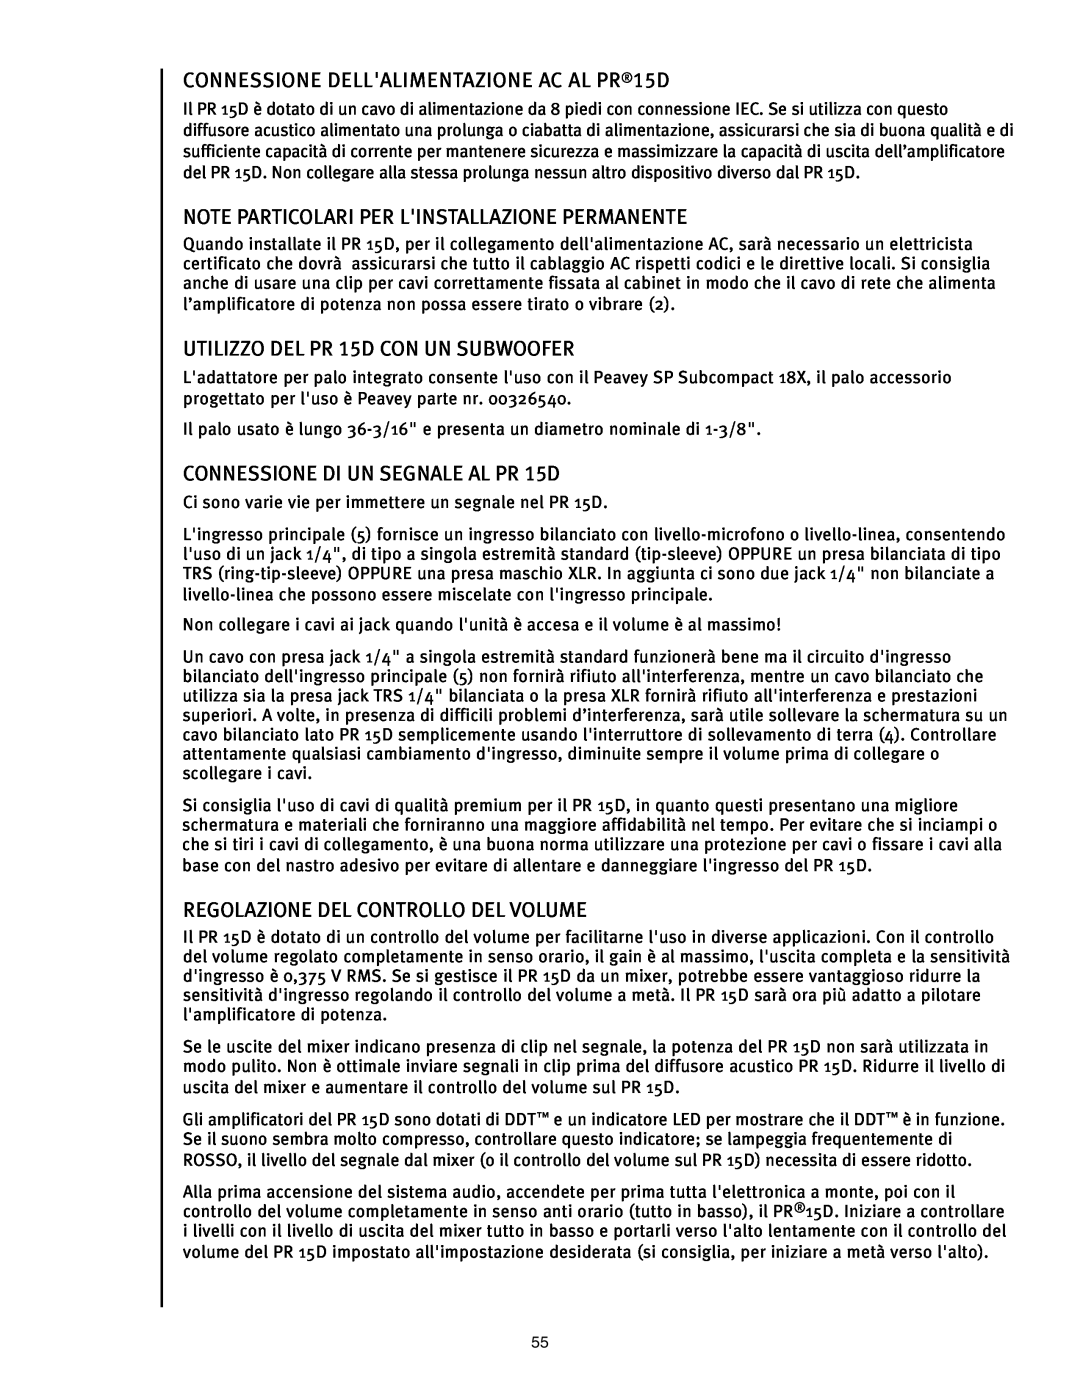 Peavey PR 15 D manual CONNESSIONE DELLALIMENTAZIONE AC AL PR15D, Note Particolari Per Linstallazione Permanente 